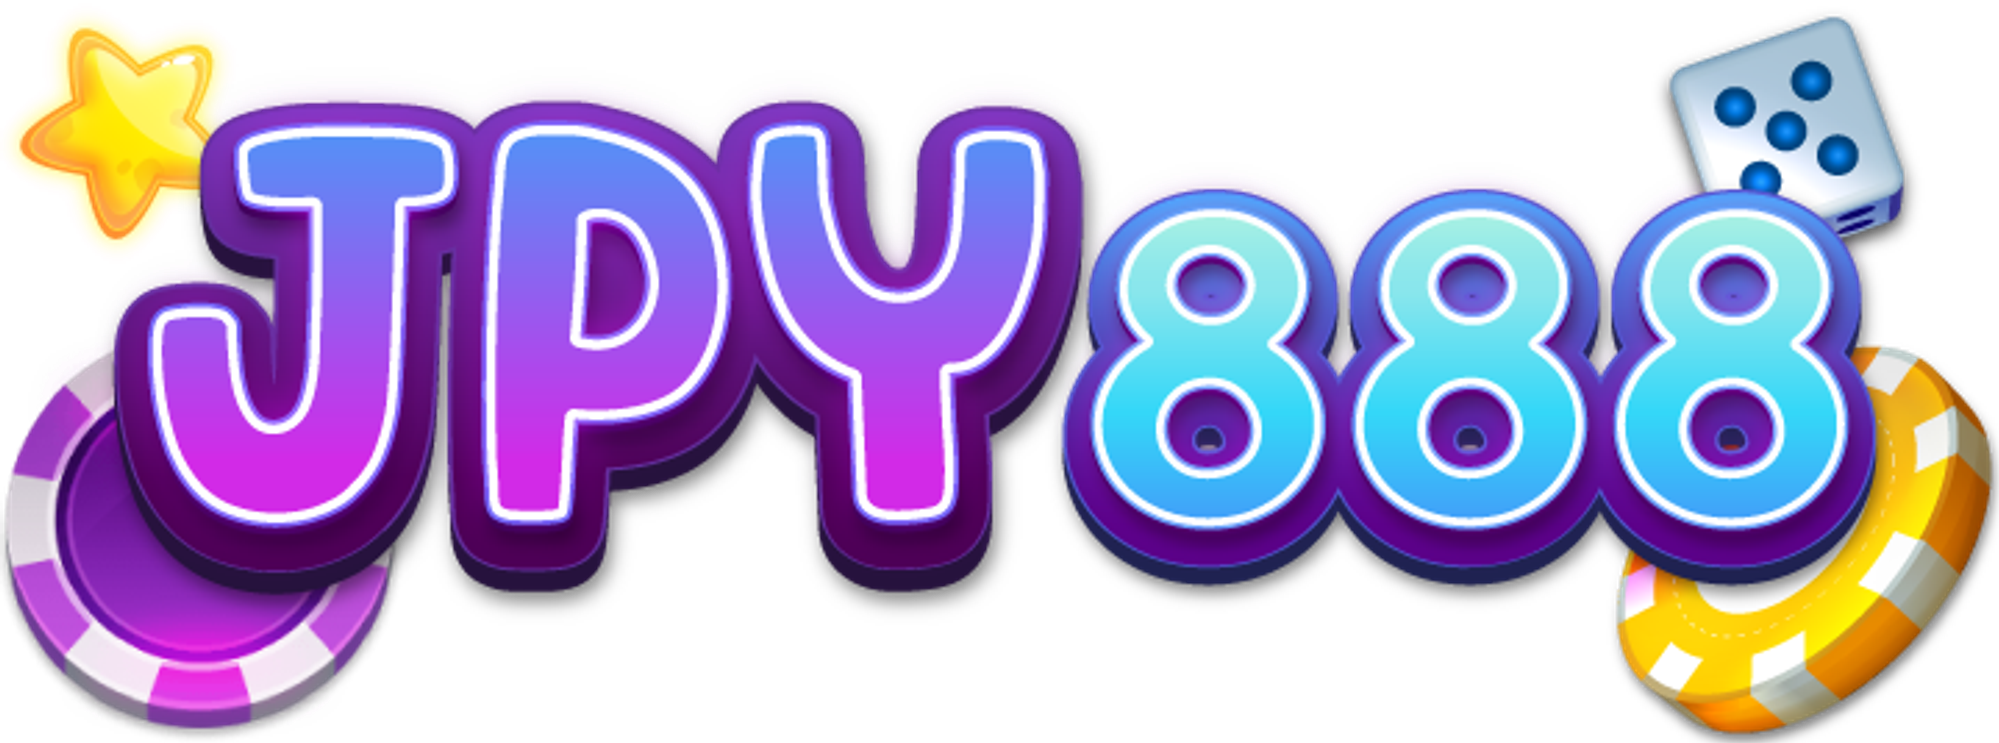 JPY888